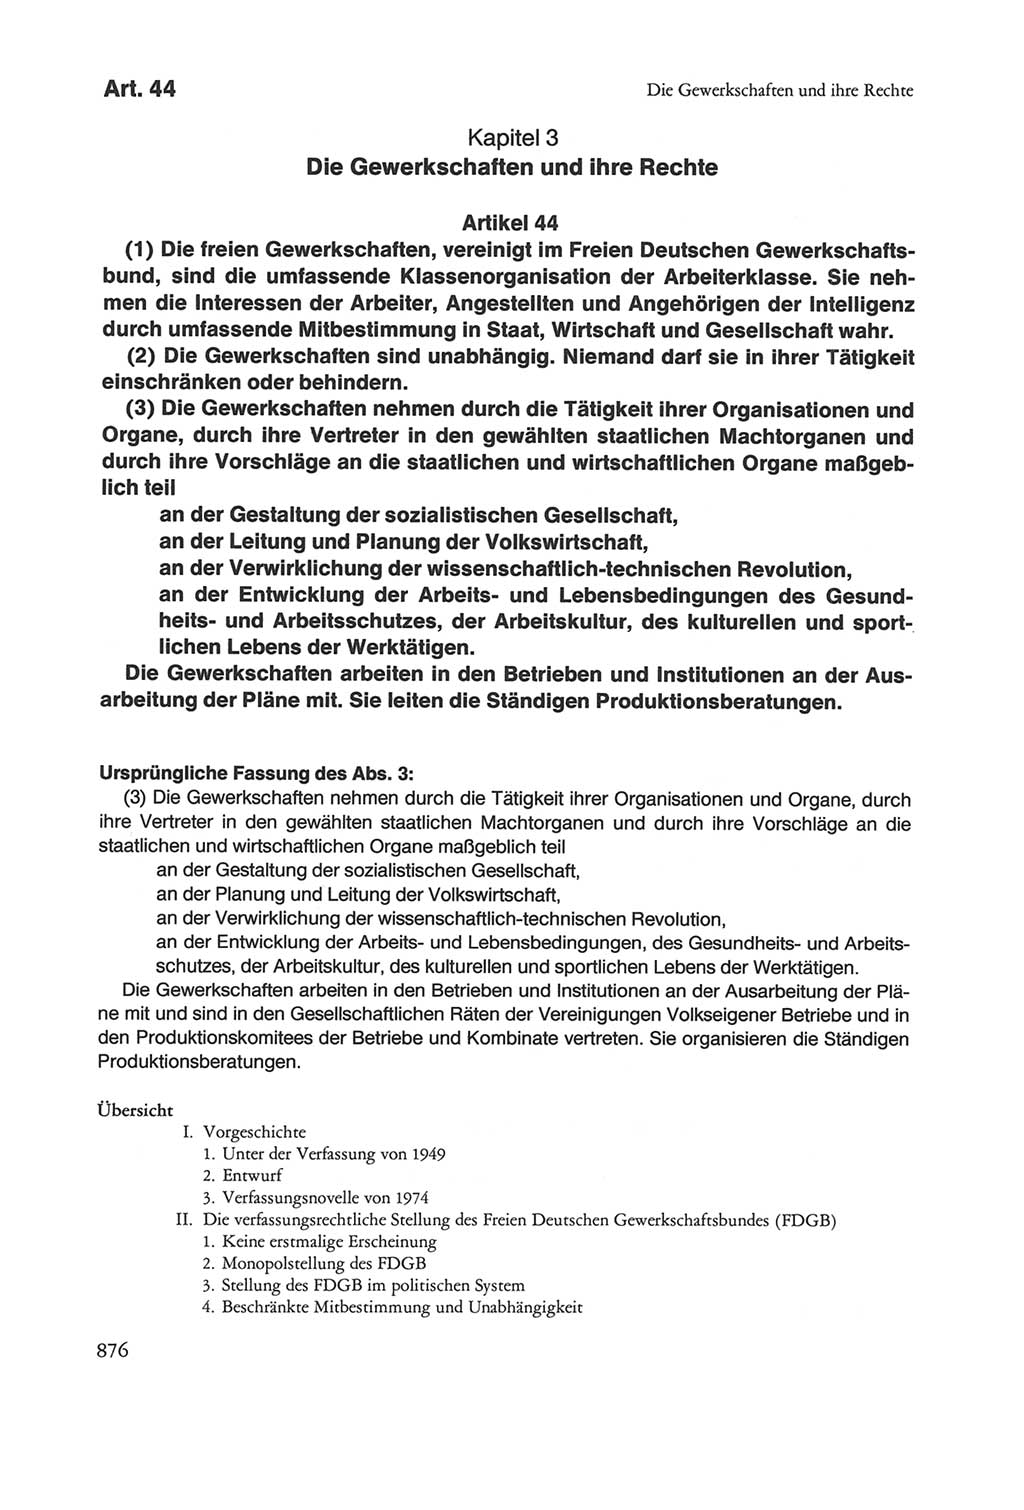 Die sozialistische Verfassung der Deutschen Demokratischen Republik (DDR), Kommentar 1982, Seite 876 (Soz. Verf. DDR Komm. 1982, S. 876)